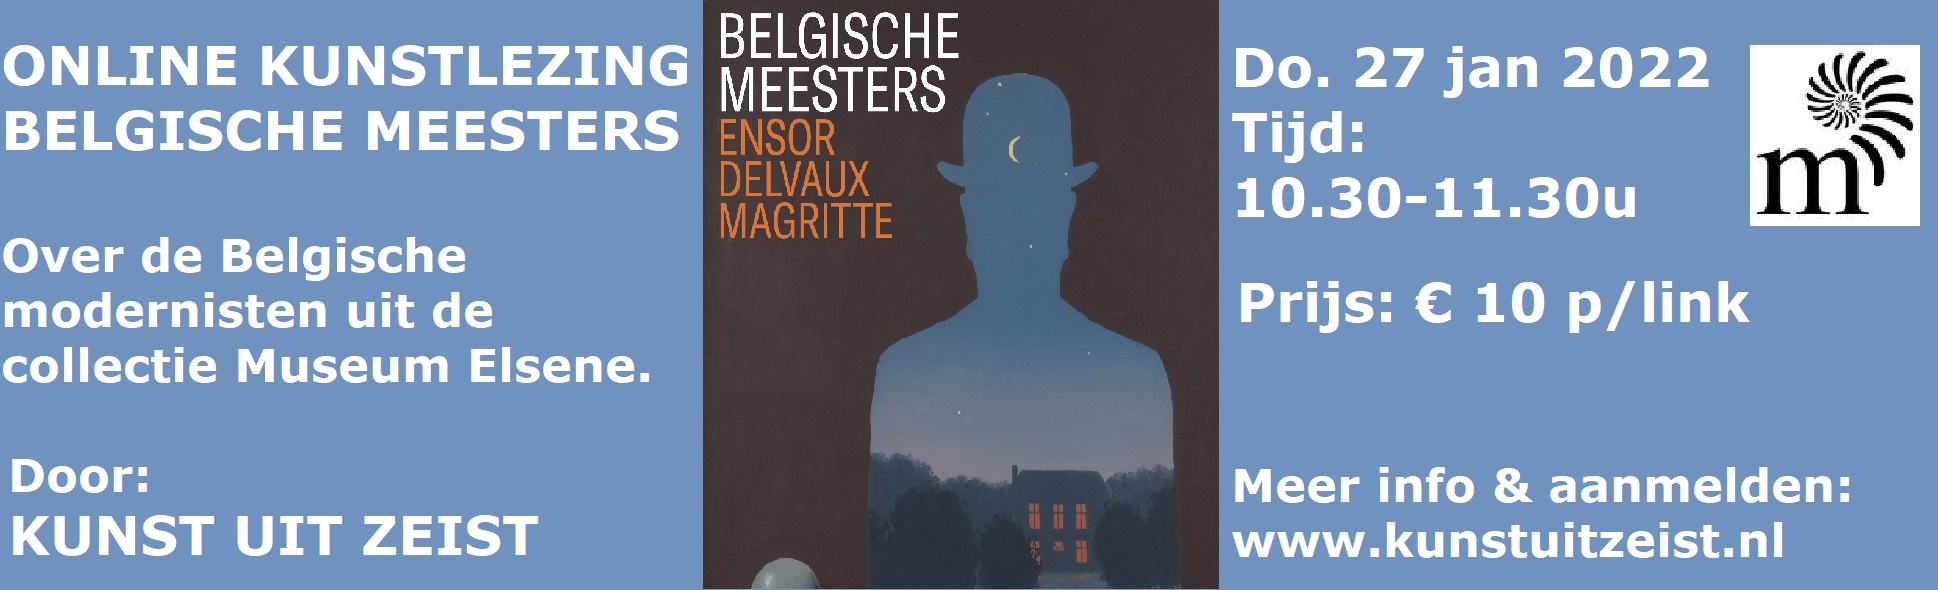 Online Kunstlezing Belgische Meesters